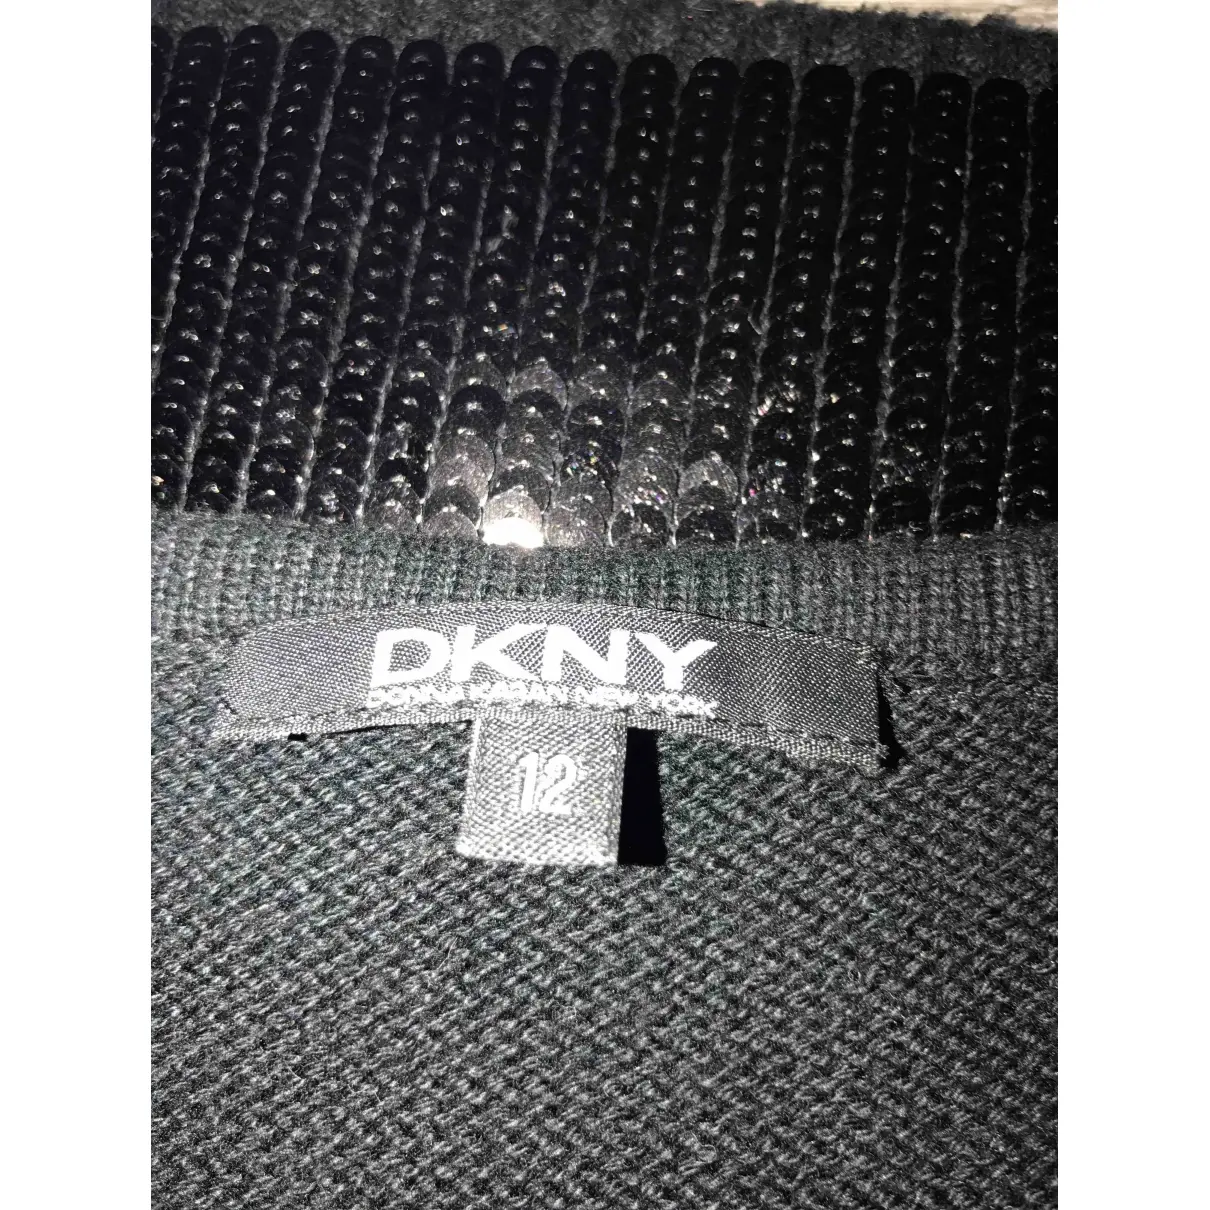 Buy Dkny Maxi dress online